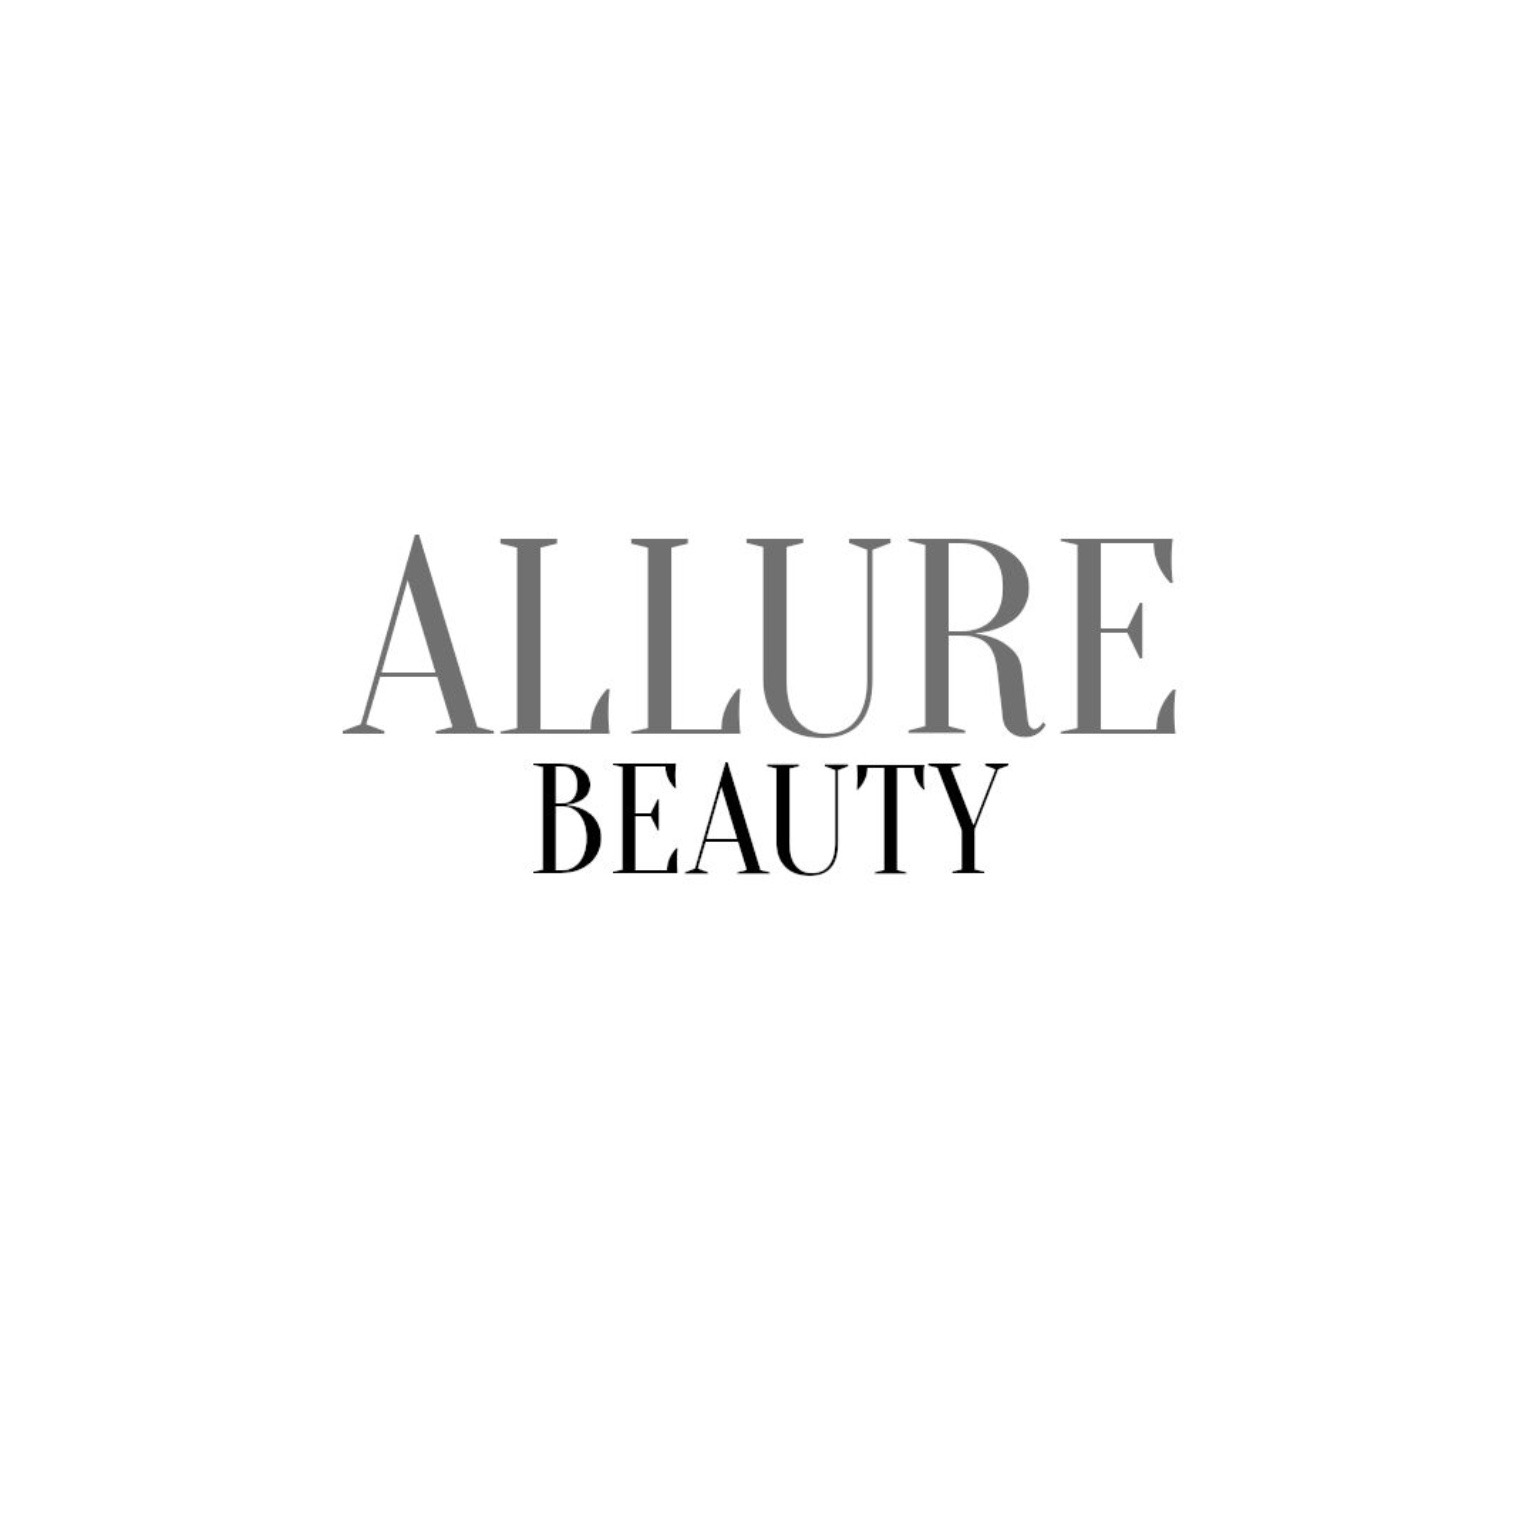 Allure beauty 